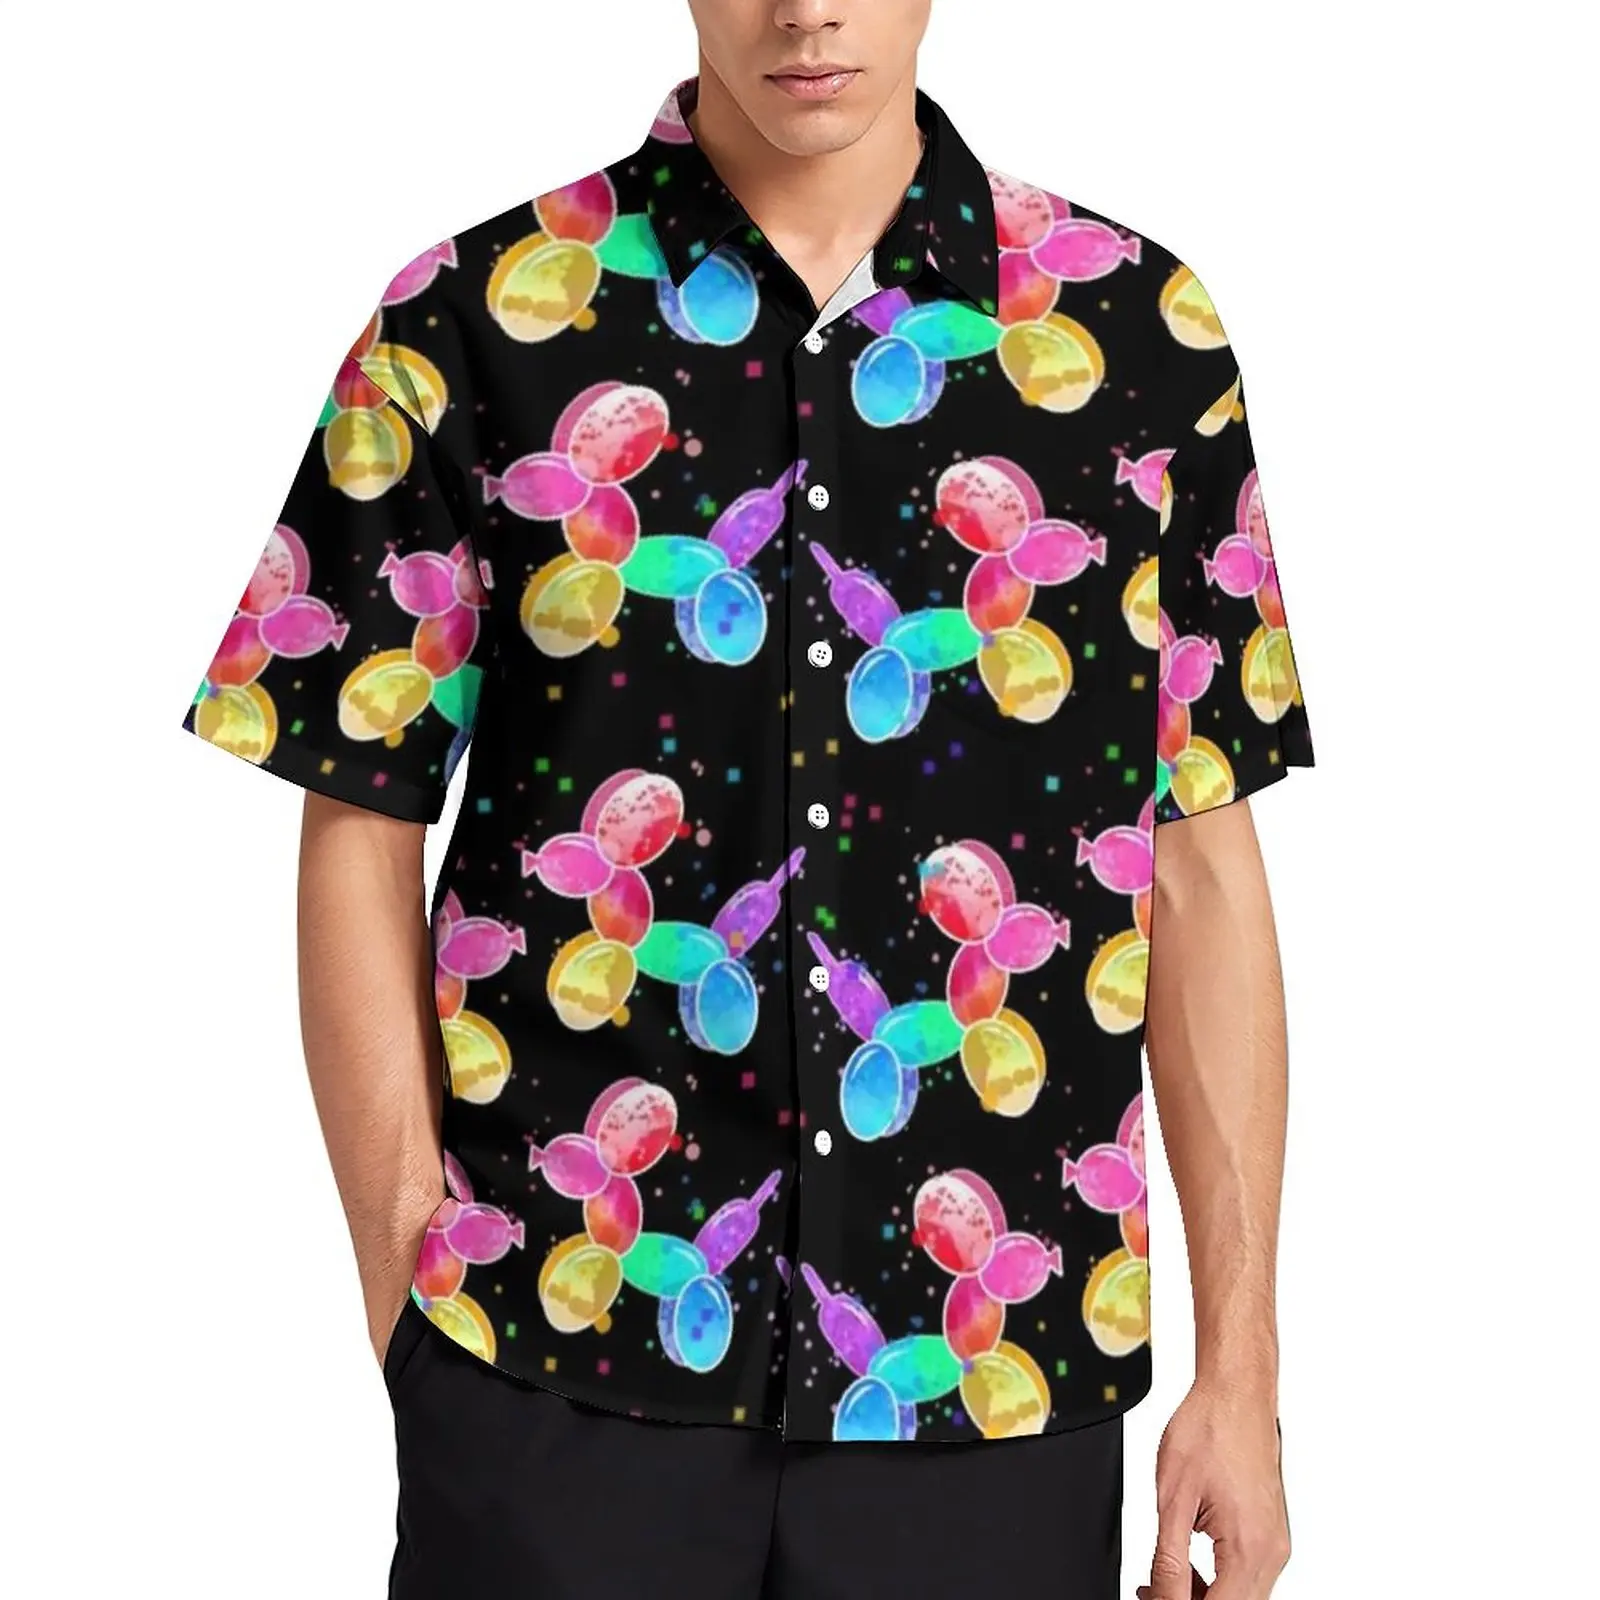 

Пляжная рубашка с радужными животными, мужские повседневные рубашки с принтом воздушных шаров, собак, Гавайские рубашки с короткими рукава...